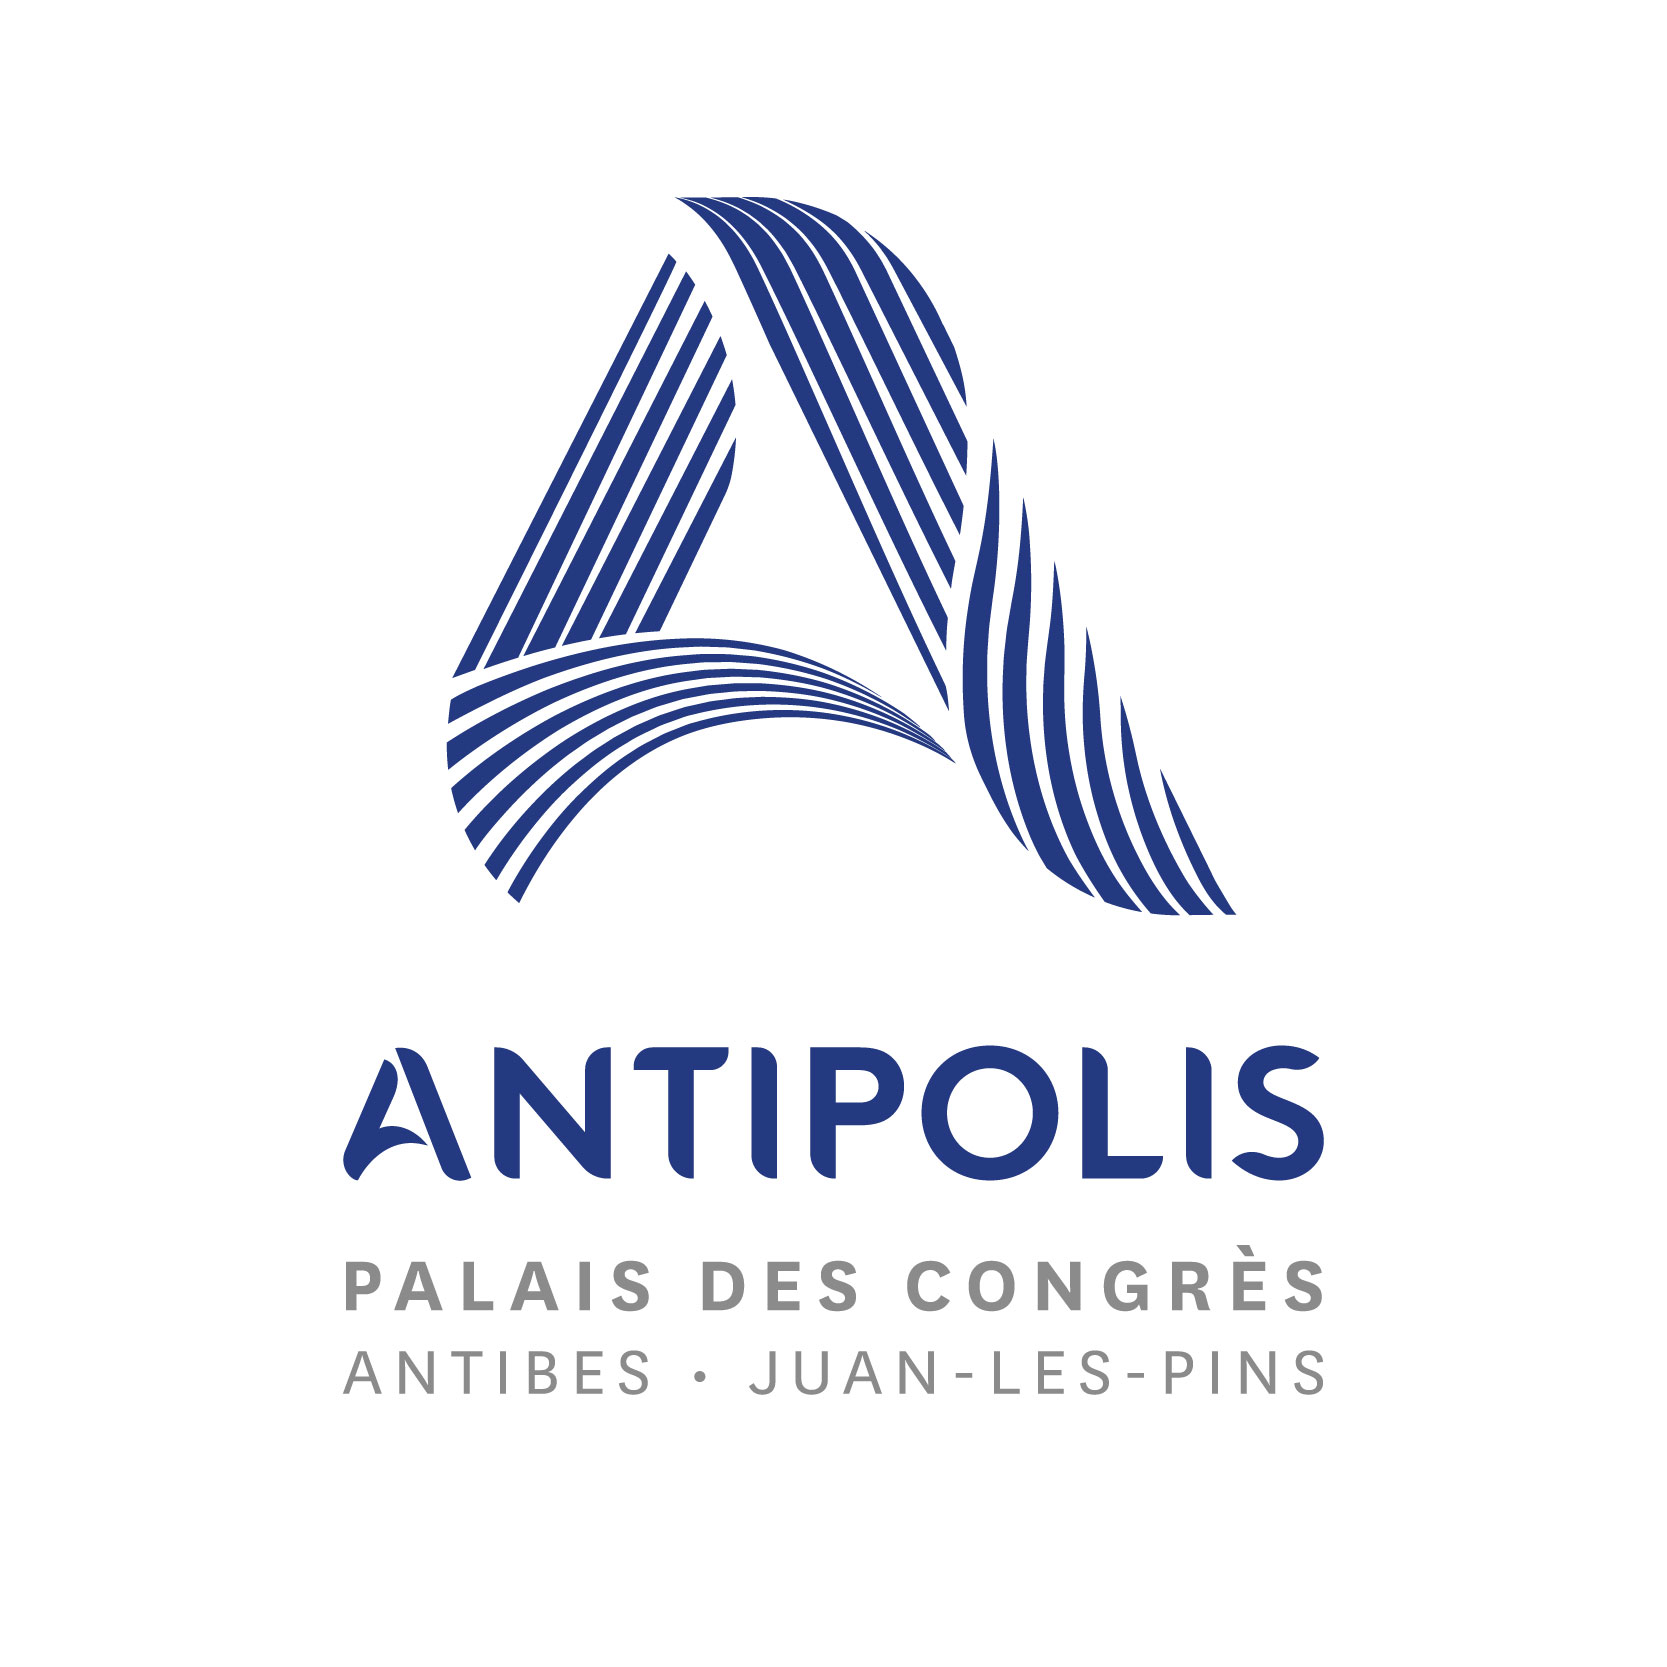 Palais des congrès Antipolis